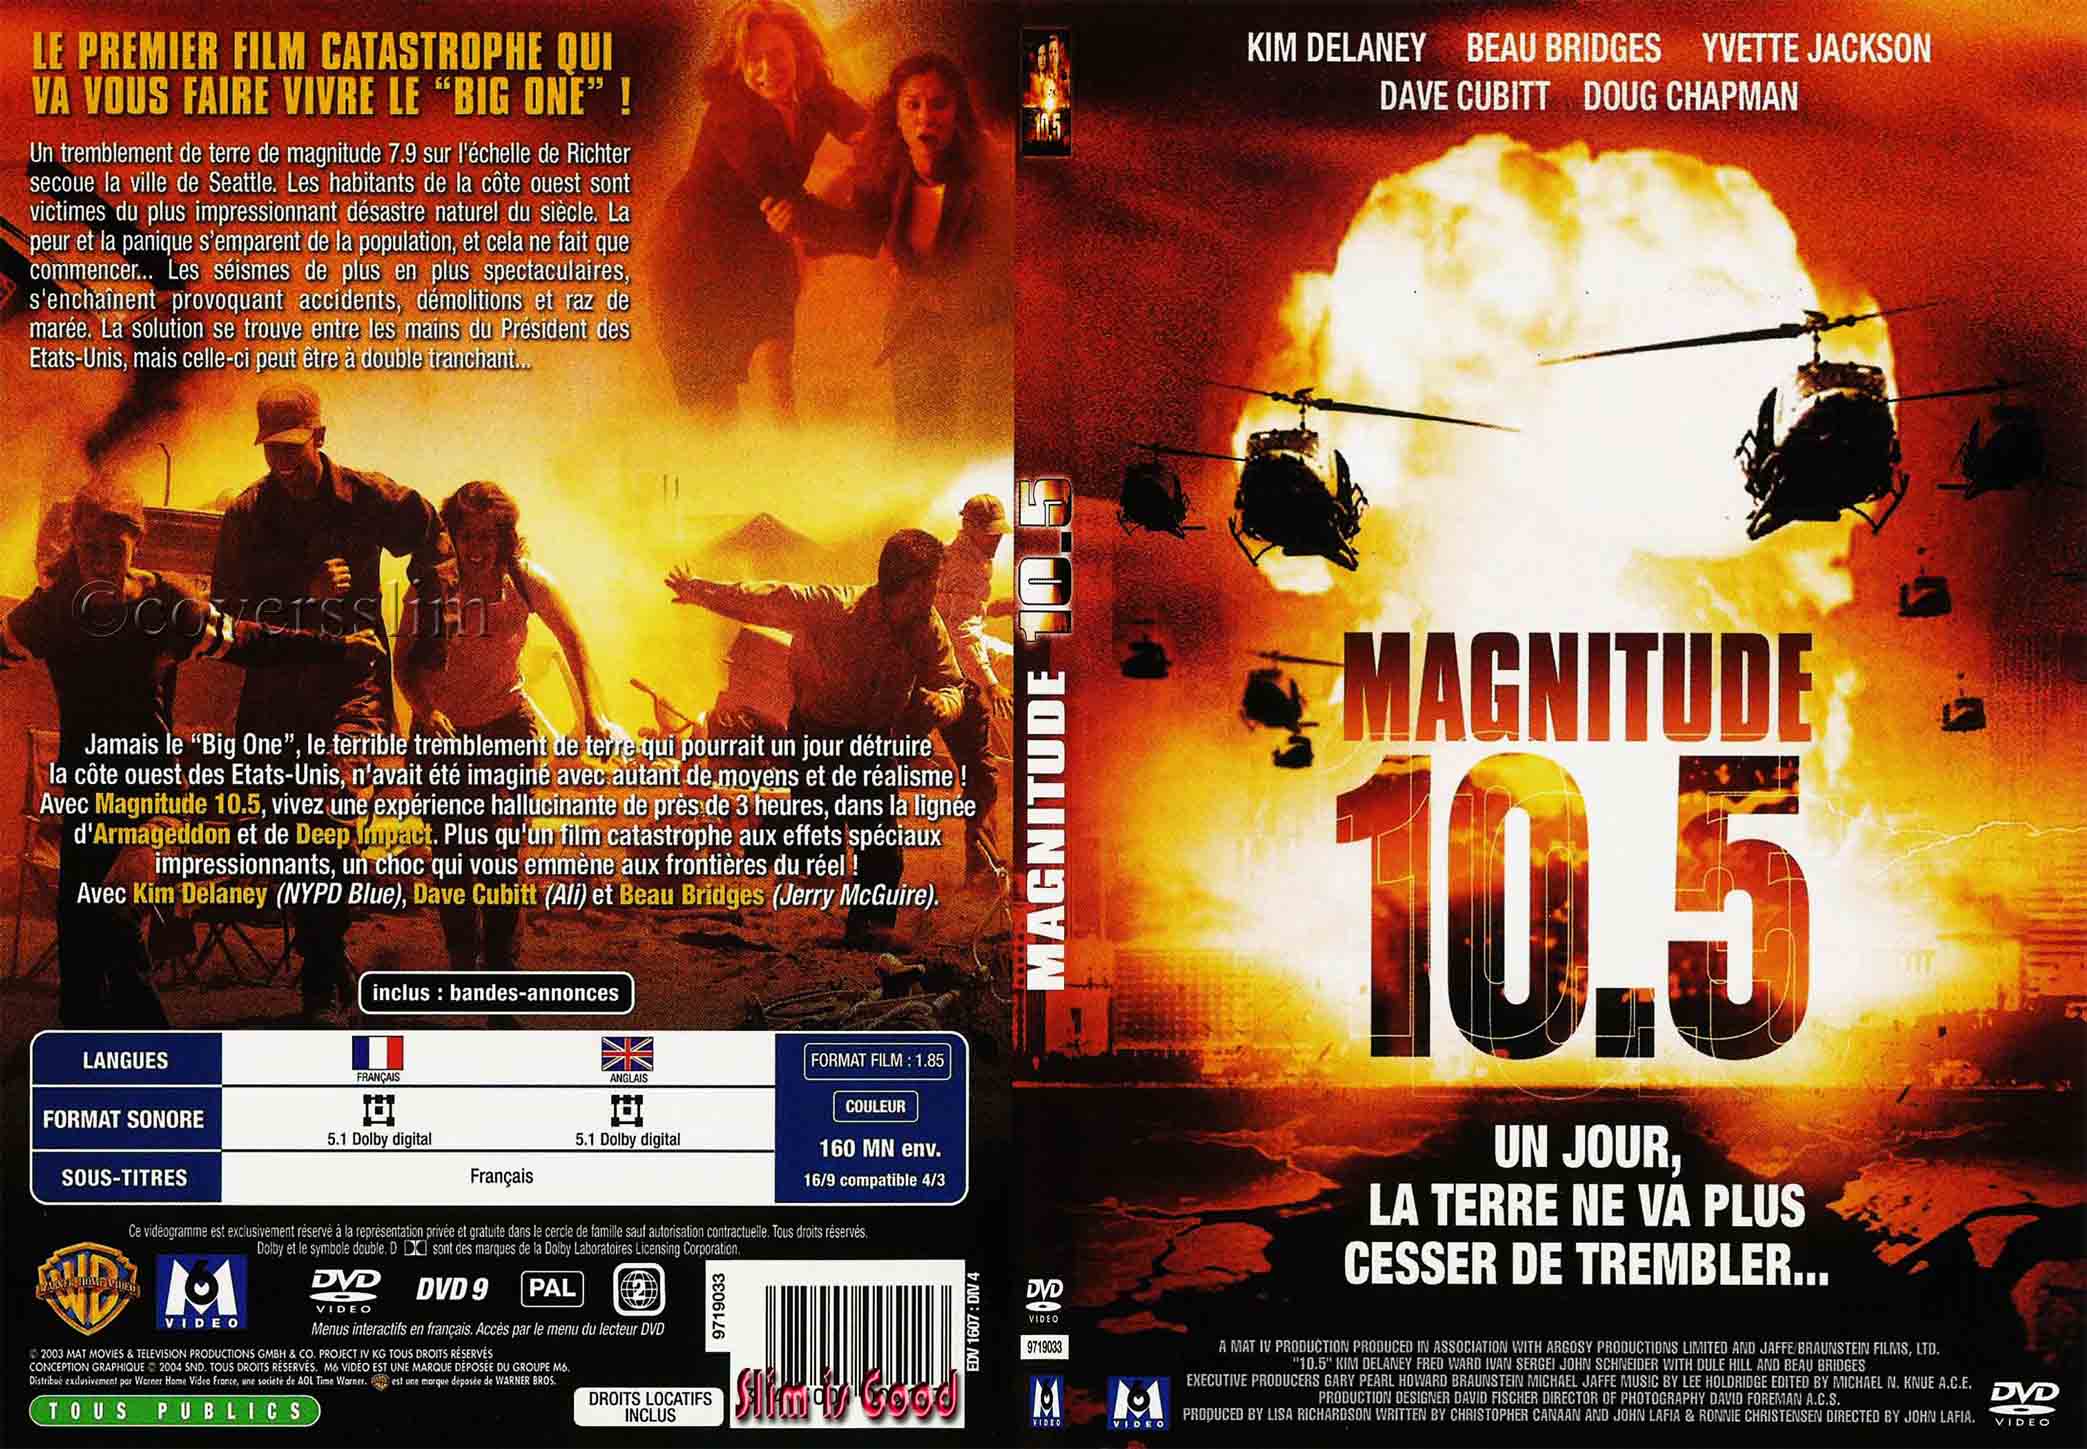 Jaquette DVD Magnitude 10 5 - SLIM